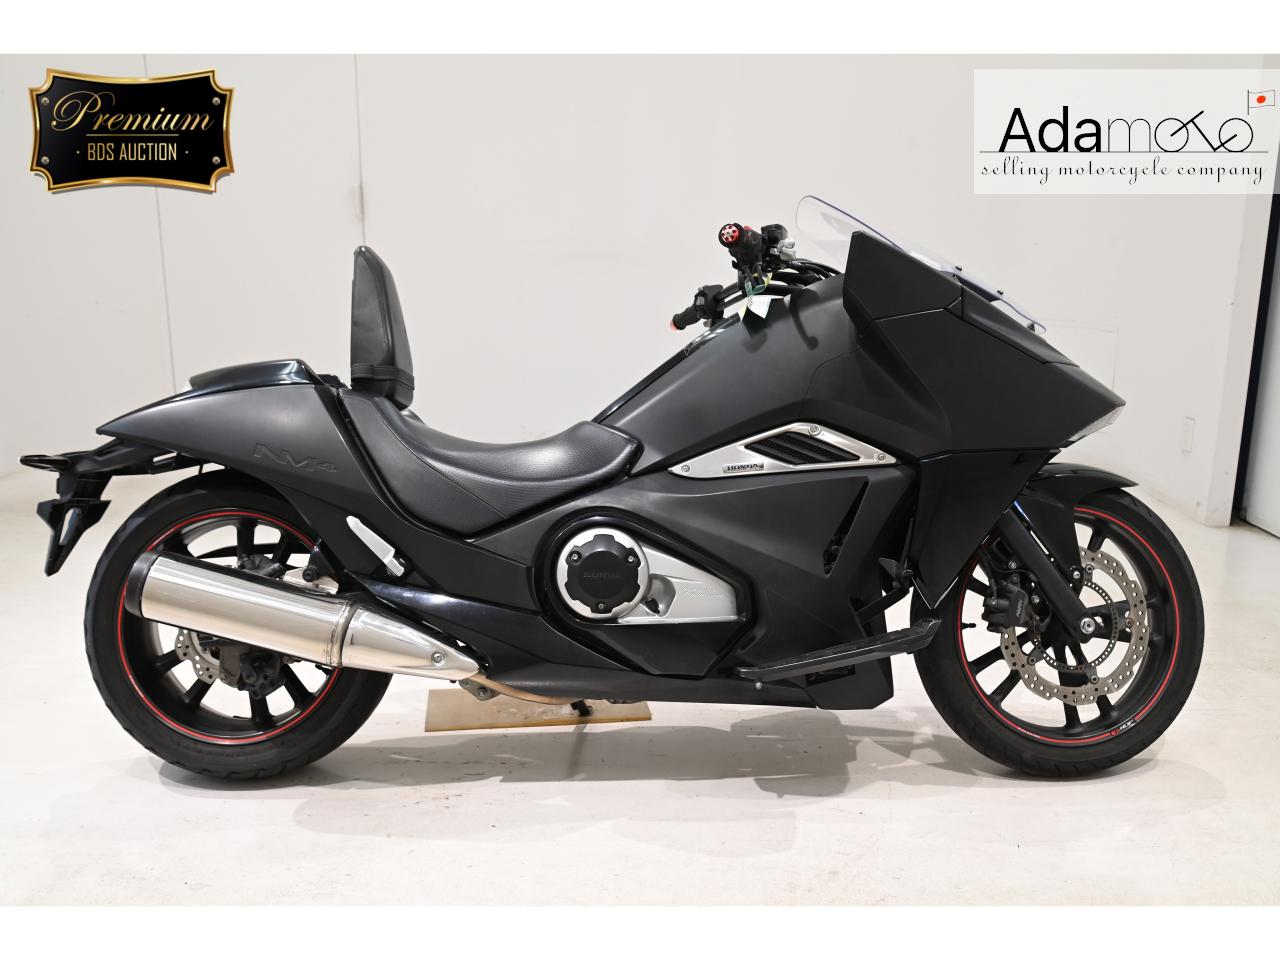 Honda NM4 01 - Adamoto - Motorcycles from Japan